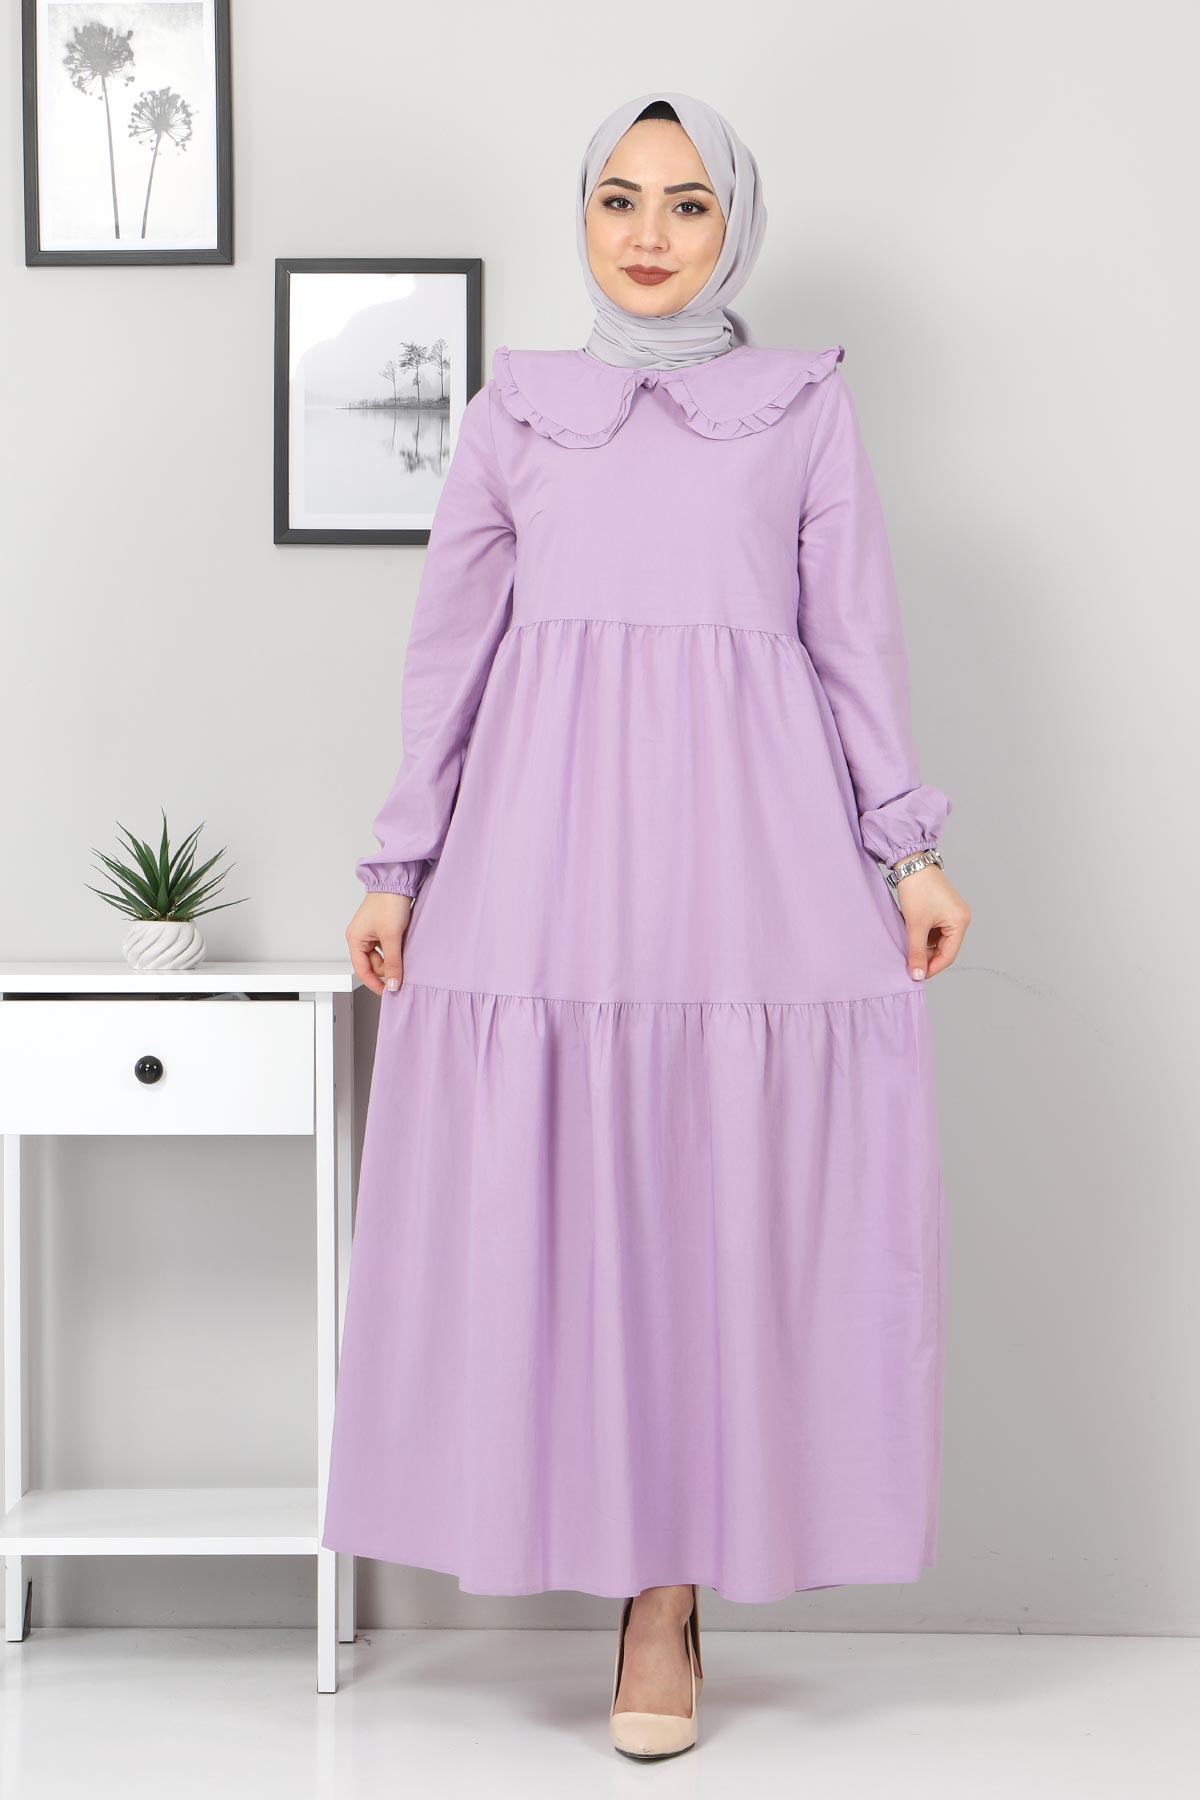 Tesettür Dünyası - Baby Collar Hijab Dress TSD0706 Lilac